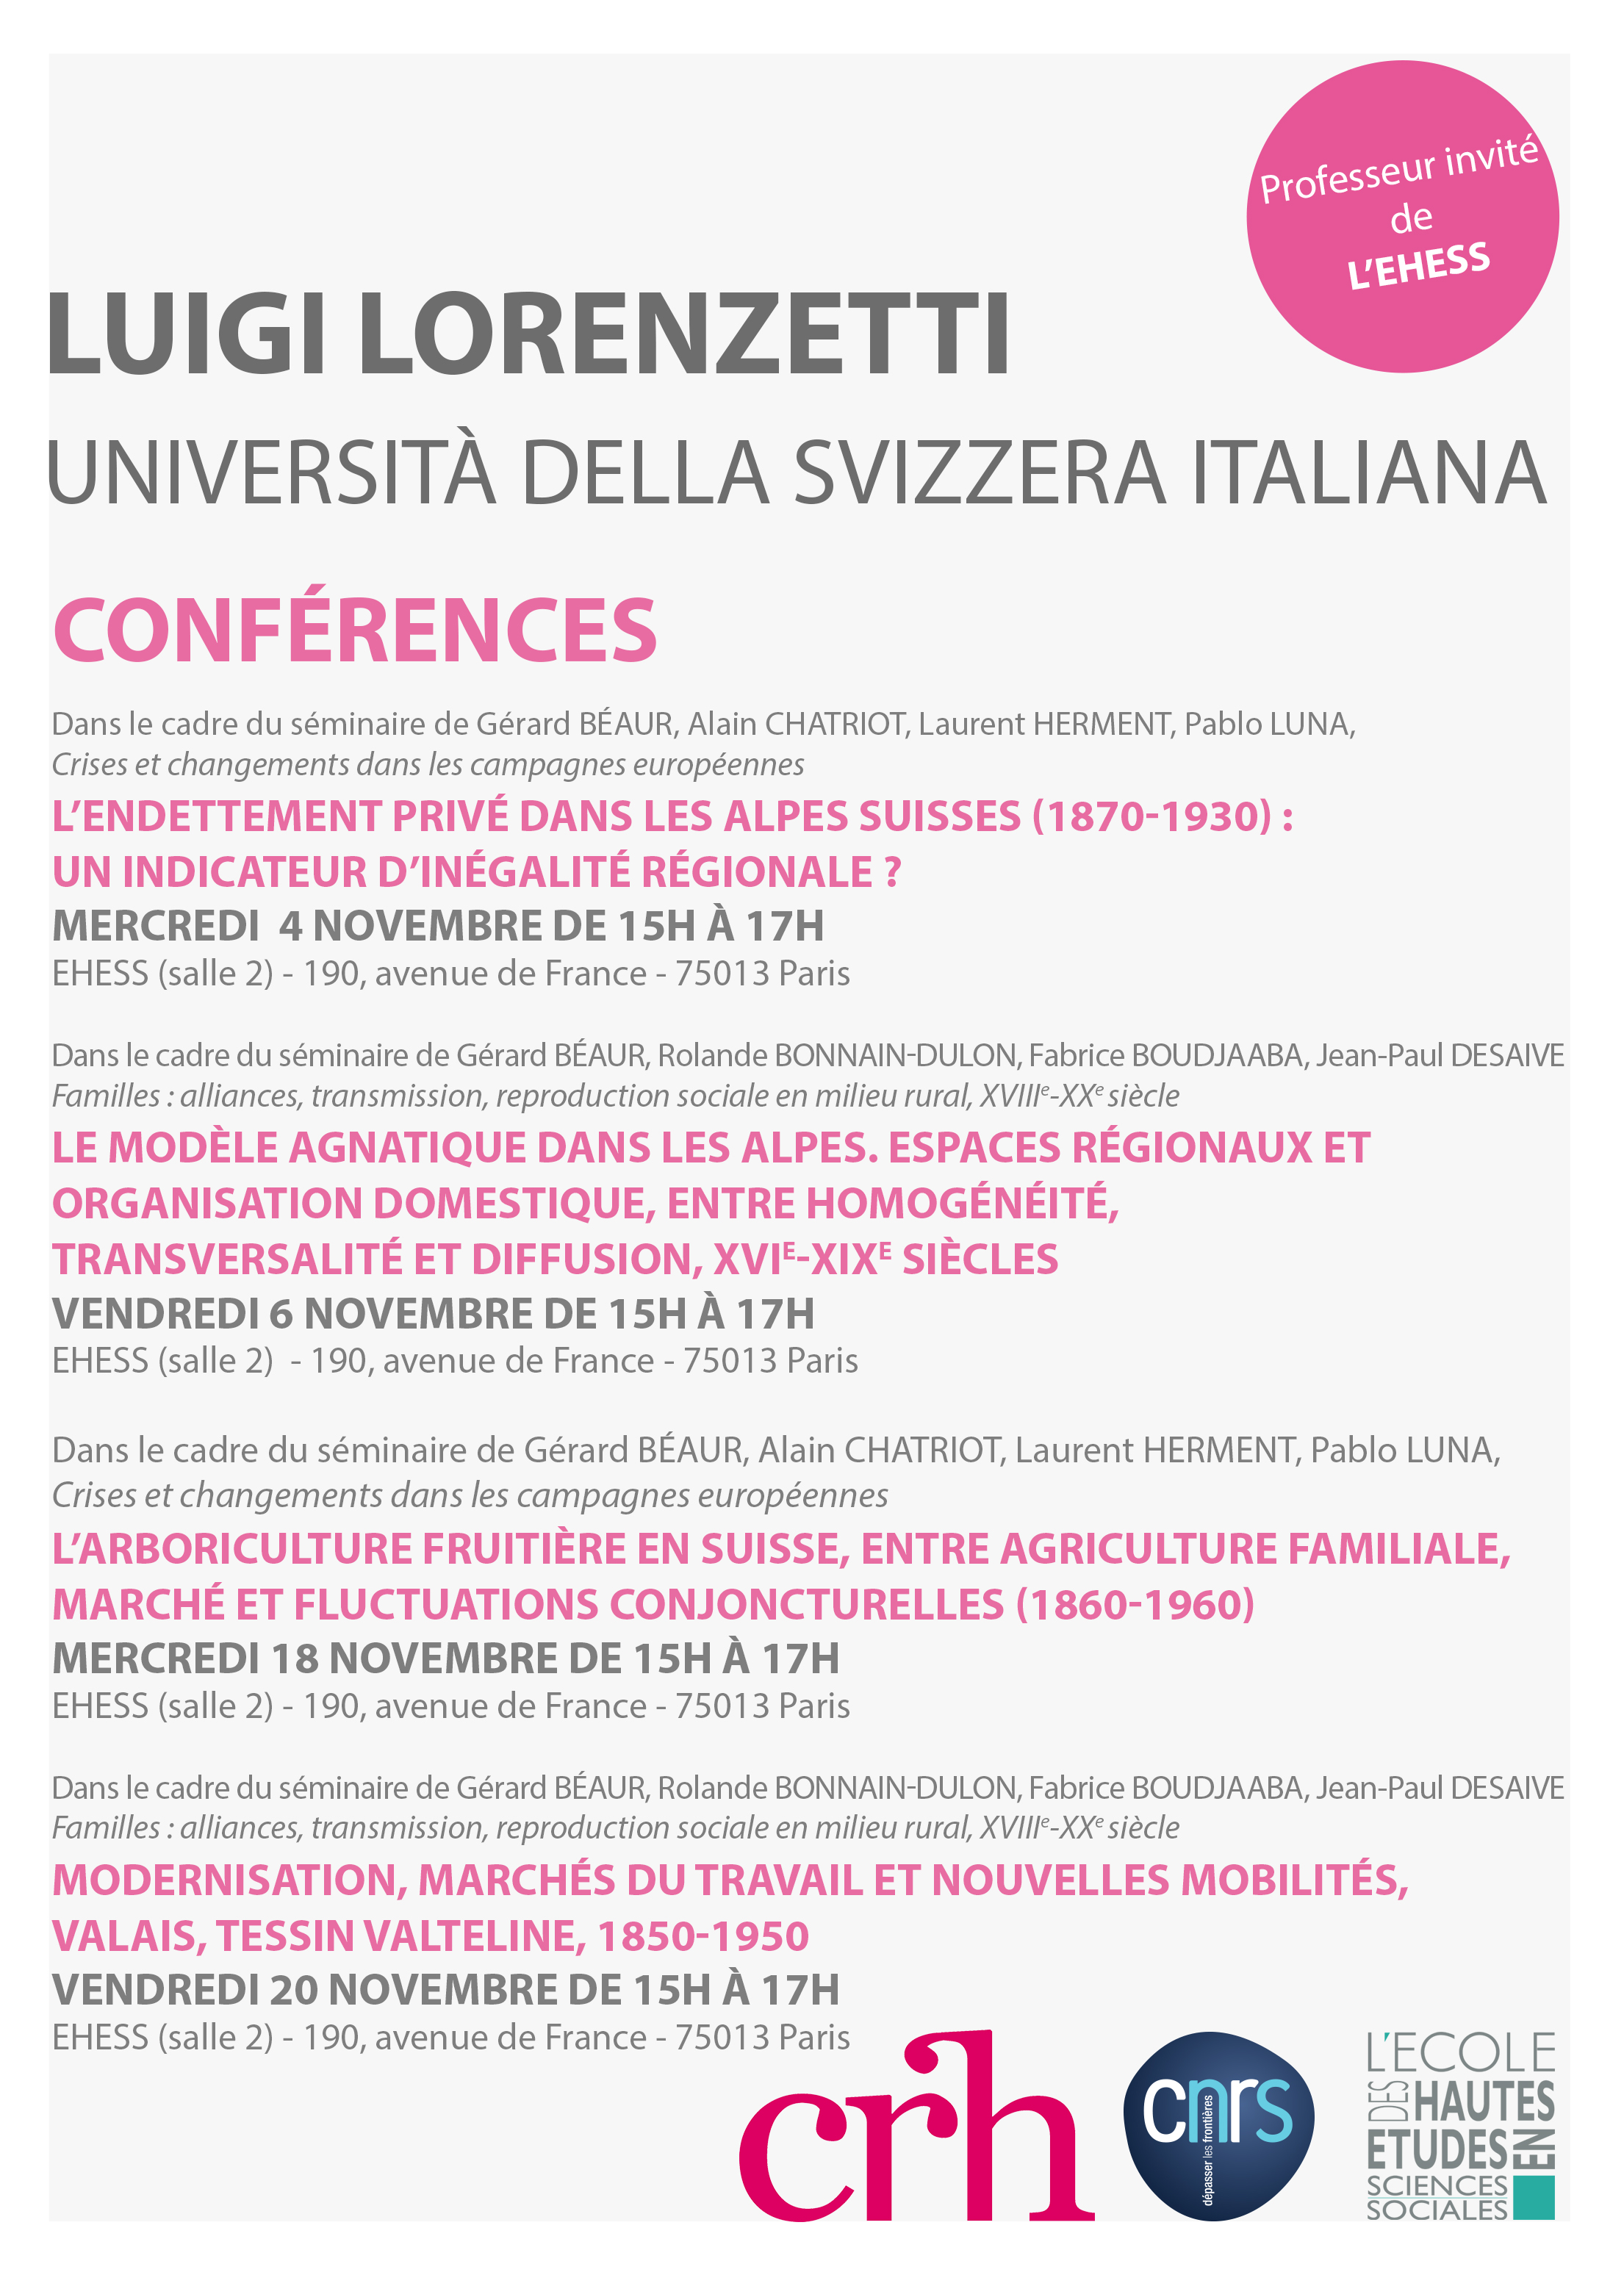 Conférences de Luigi Lorenzetti